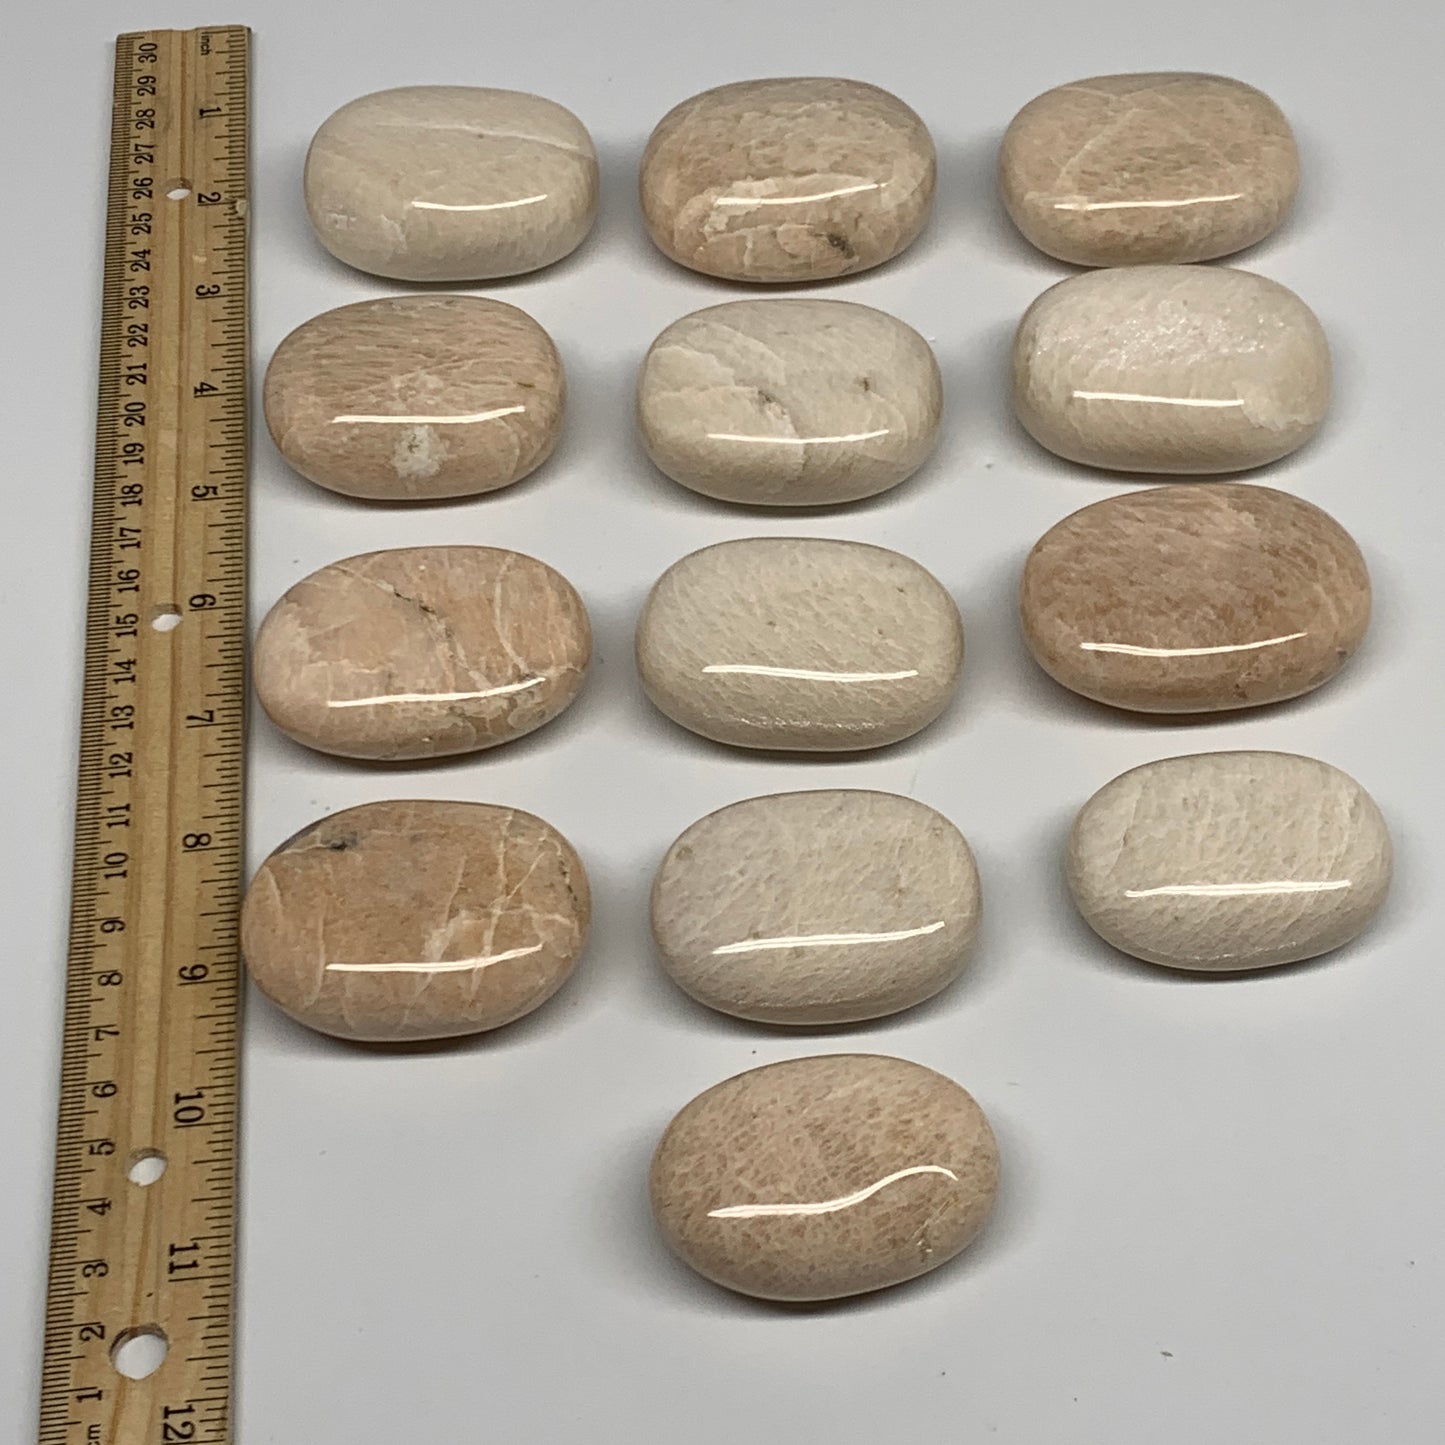 2.2 lbs (1013 Grams), 2"-2.3", 13pcs, Peach/White Moonstone Palm-Stone, B28000